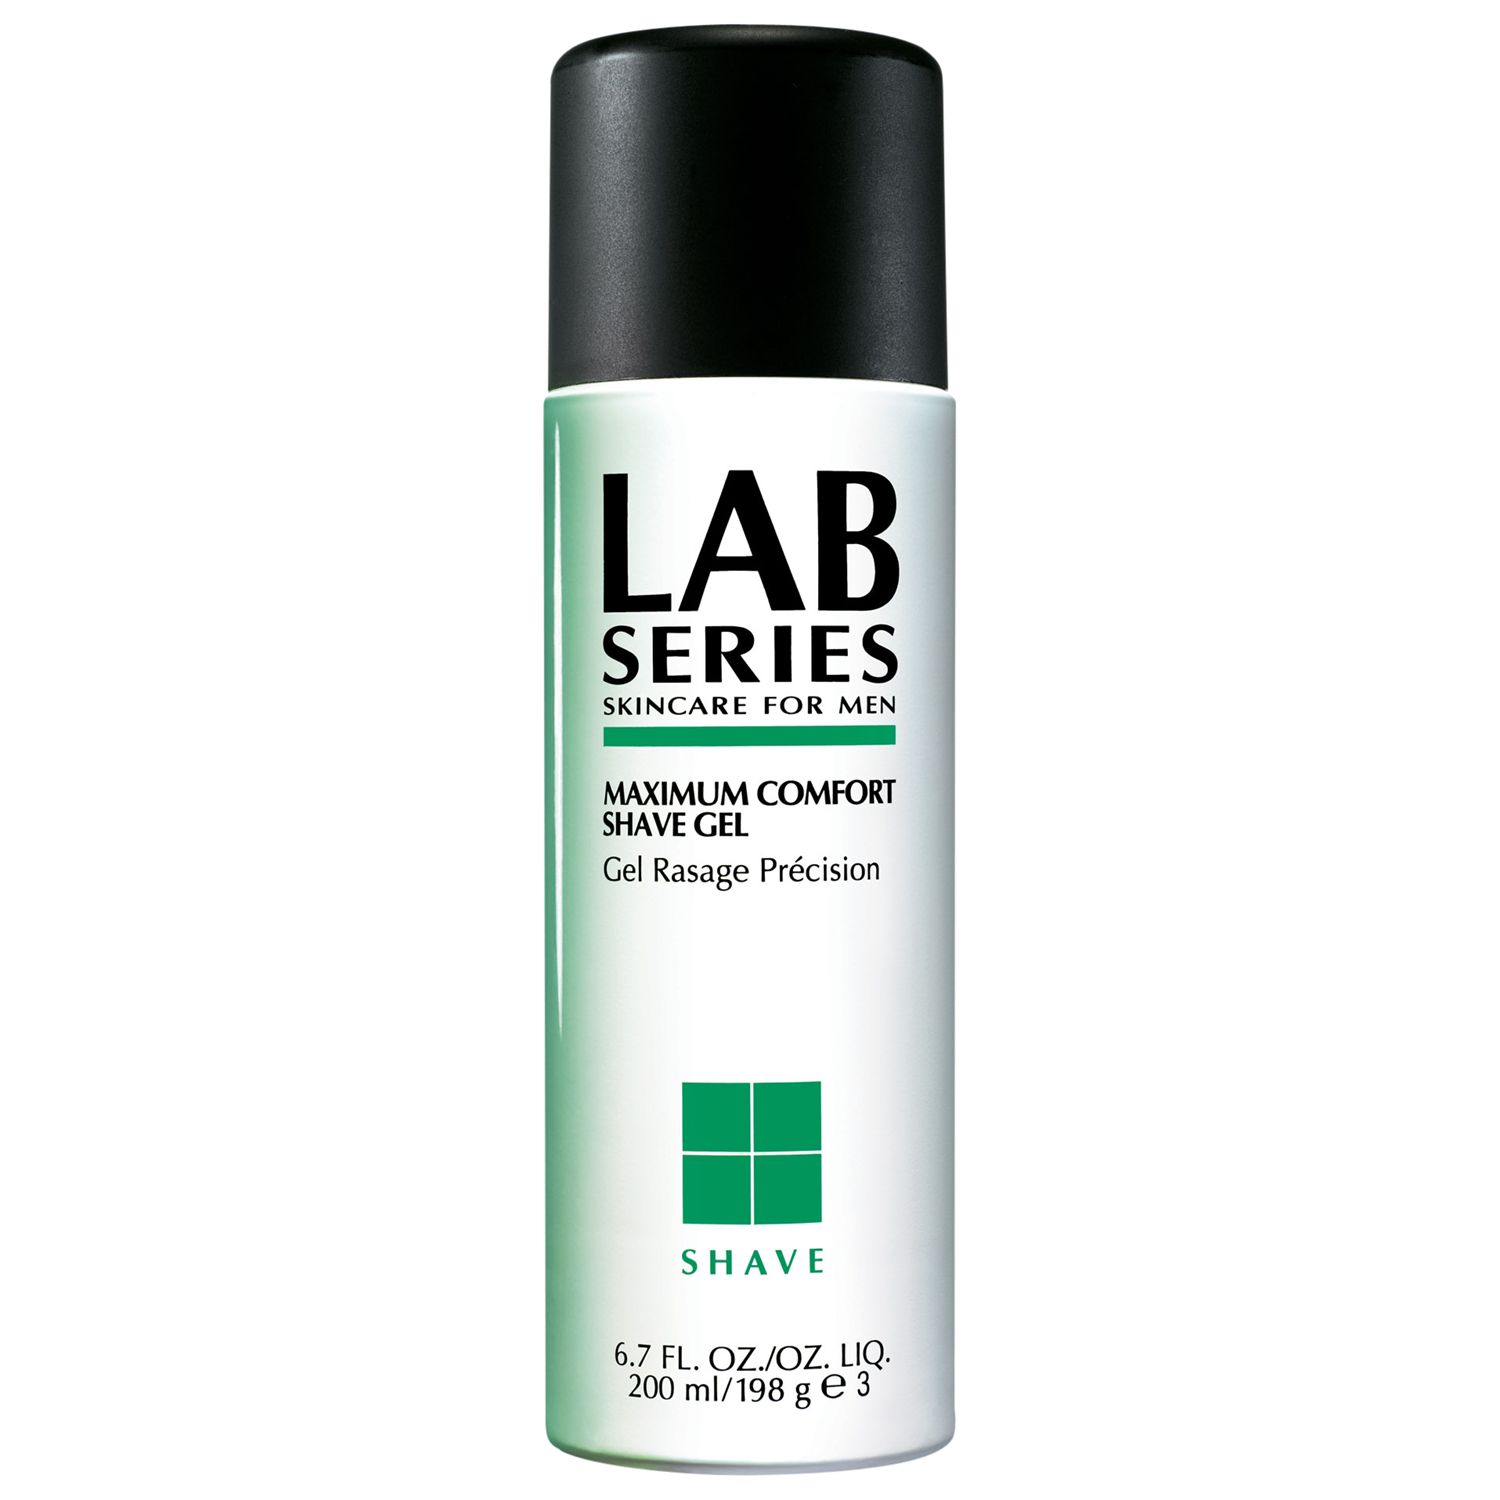 Lab Series Shave, Maximum Comfort Shave Gel,